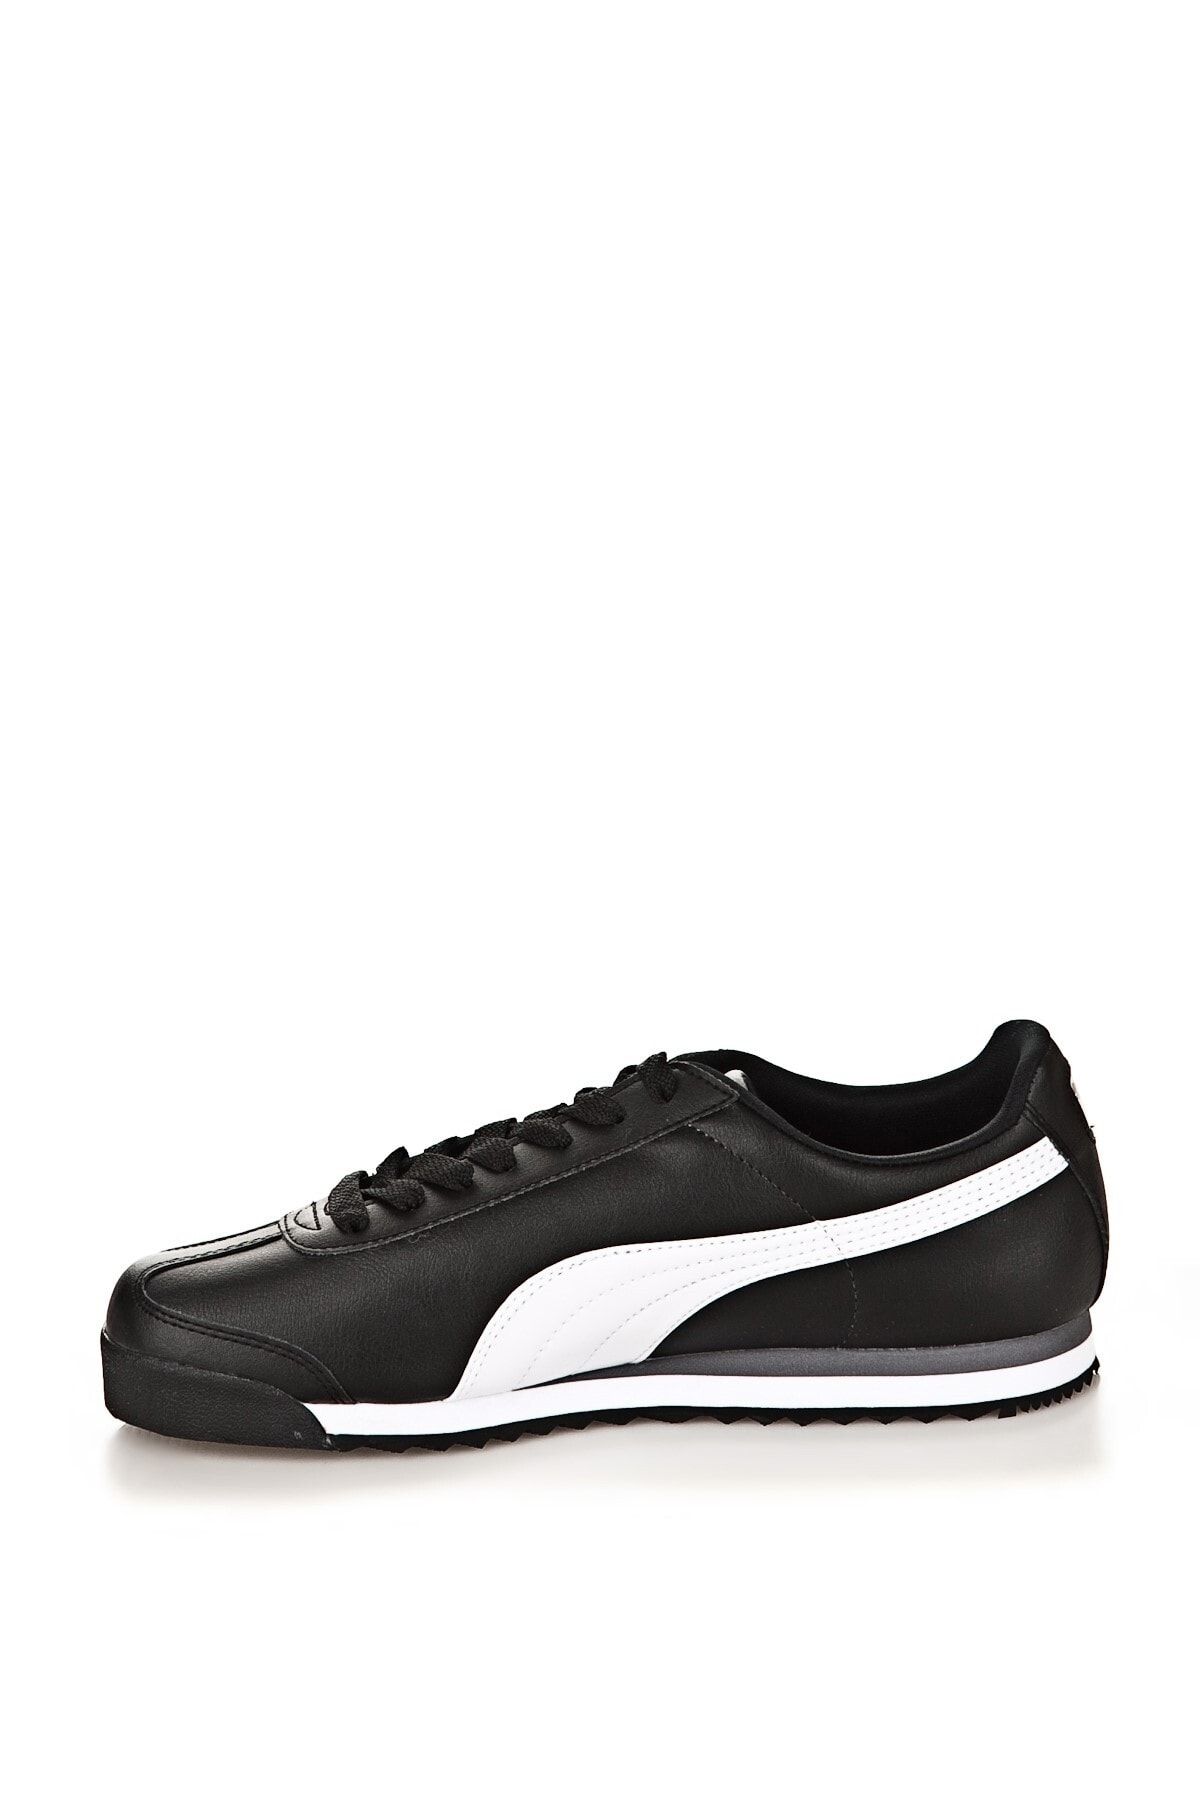 Puma Roma Basic Siyah Beyaz Kadın Erkek Günlük Spor Ayakkabı 35357211 Fiyatı Yorumları Trendyol